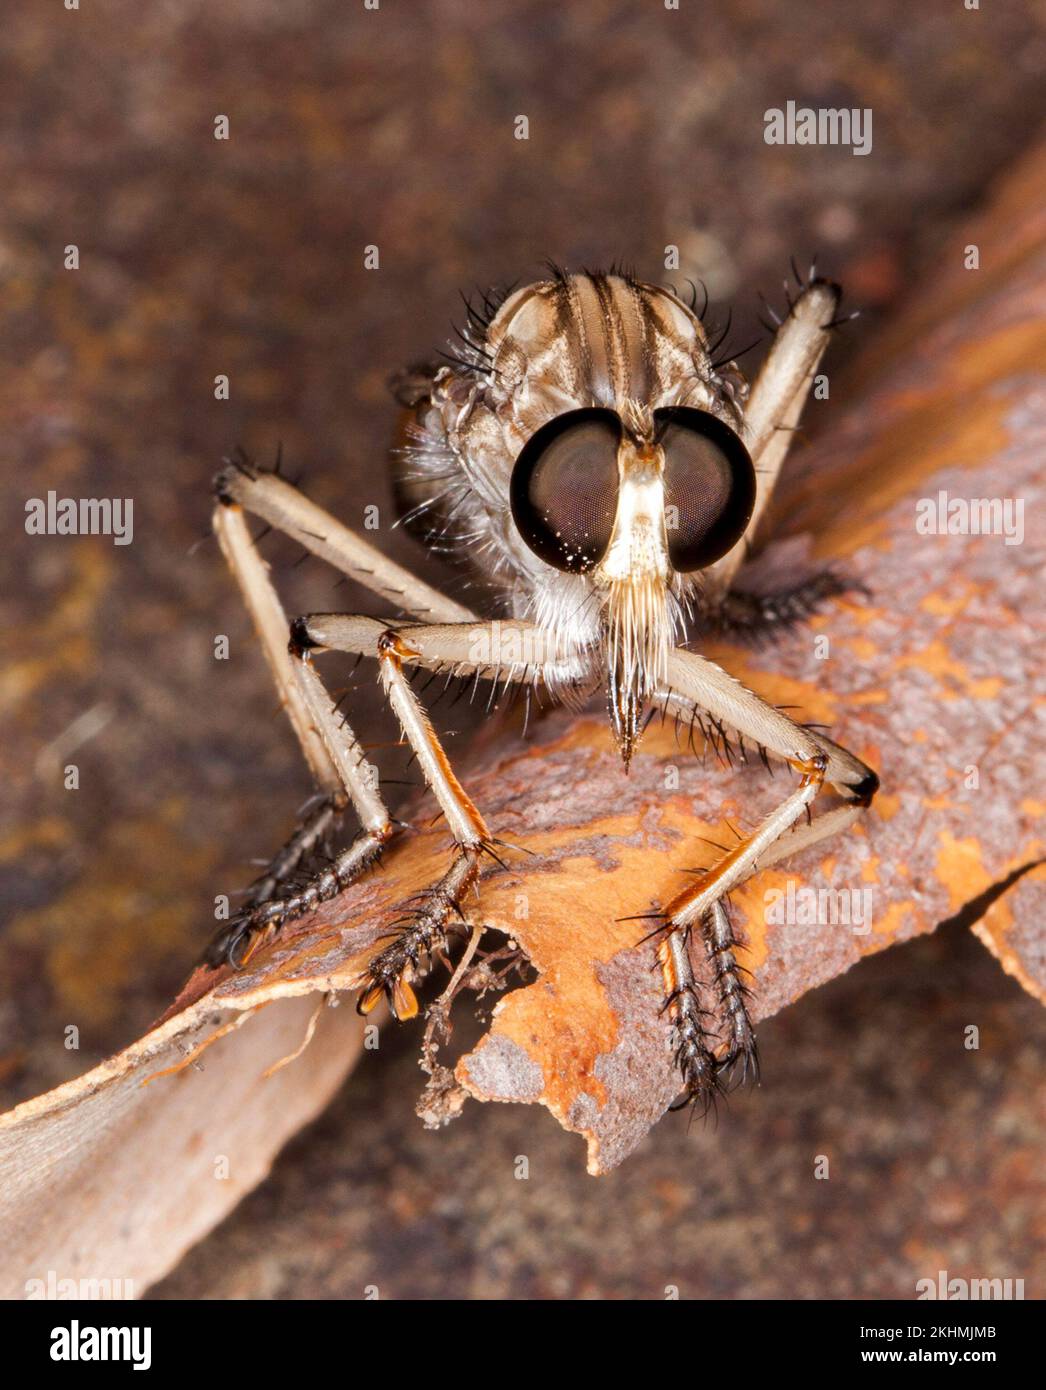 Incredibile immagine di Robber / assassin fly, famiglia Ailidae, un utile insetto predatore, su albero corteccia, di fronte macchina fotografica con occhi enormi chiaramente visibile, Foto Stock